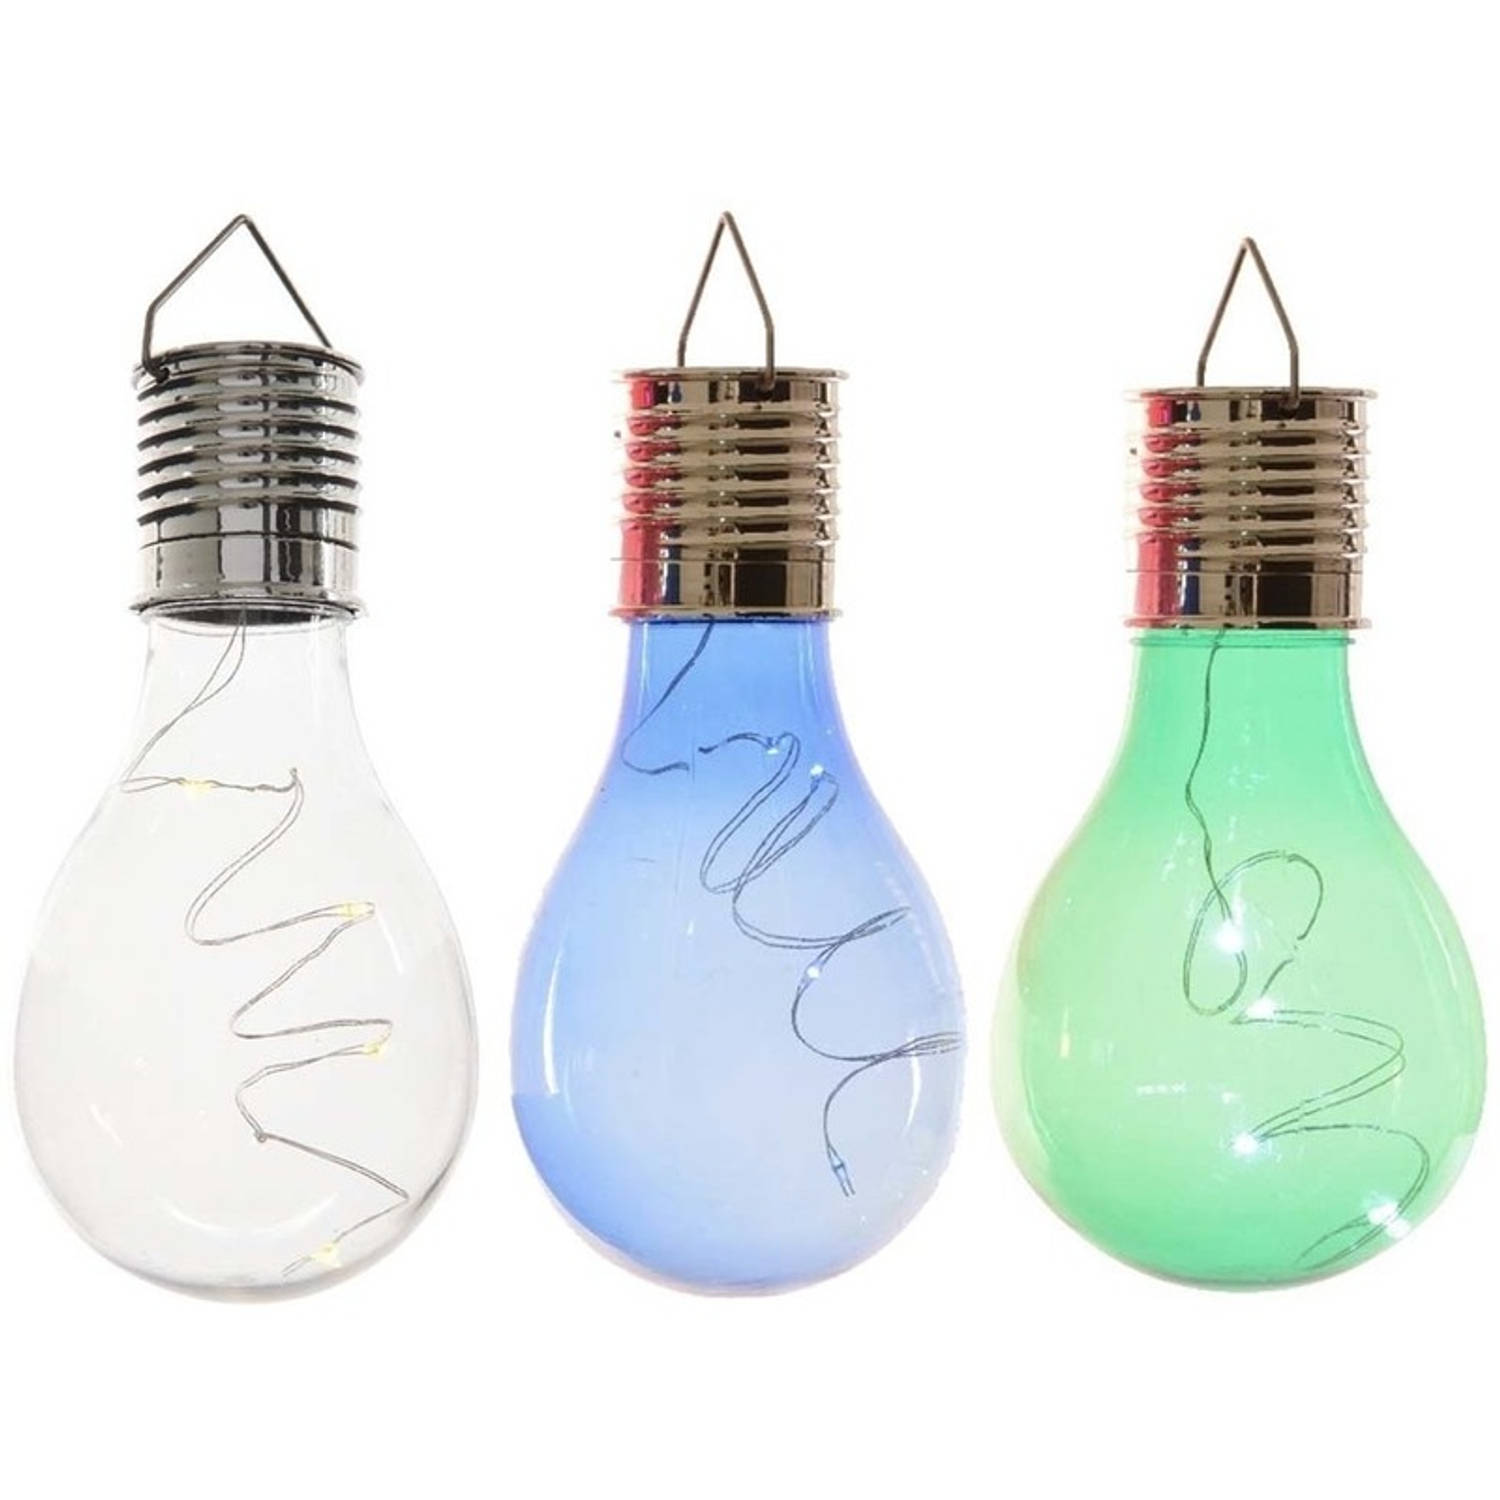 3x Buitenlampen/tuinlampen lampbolletjes/peertjes 14 cm transparant/blauw/groen - Buitenverlichting